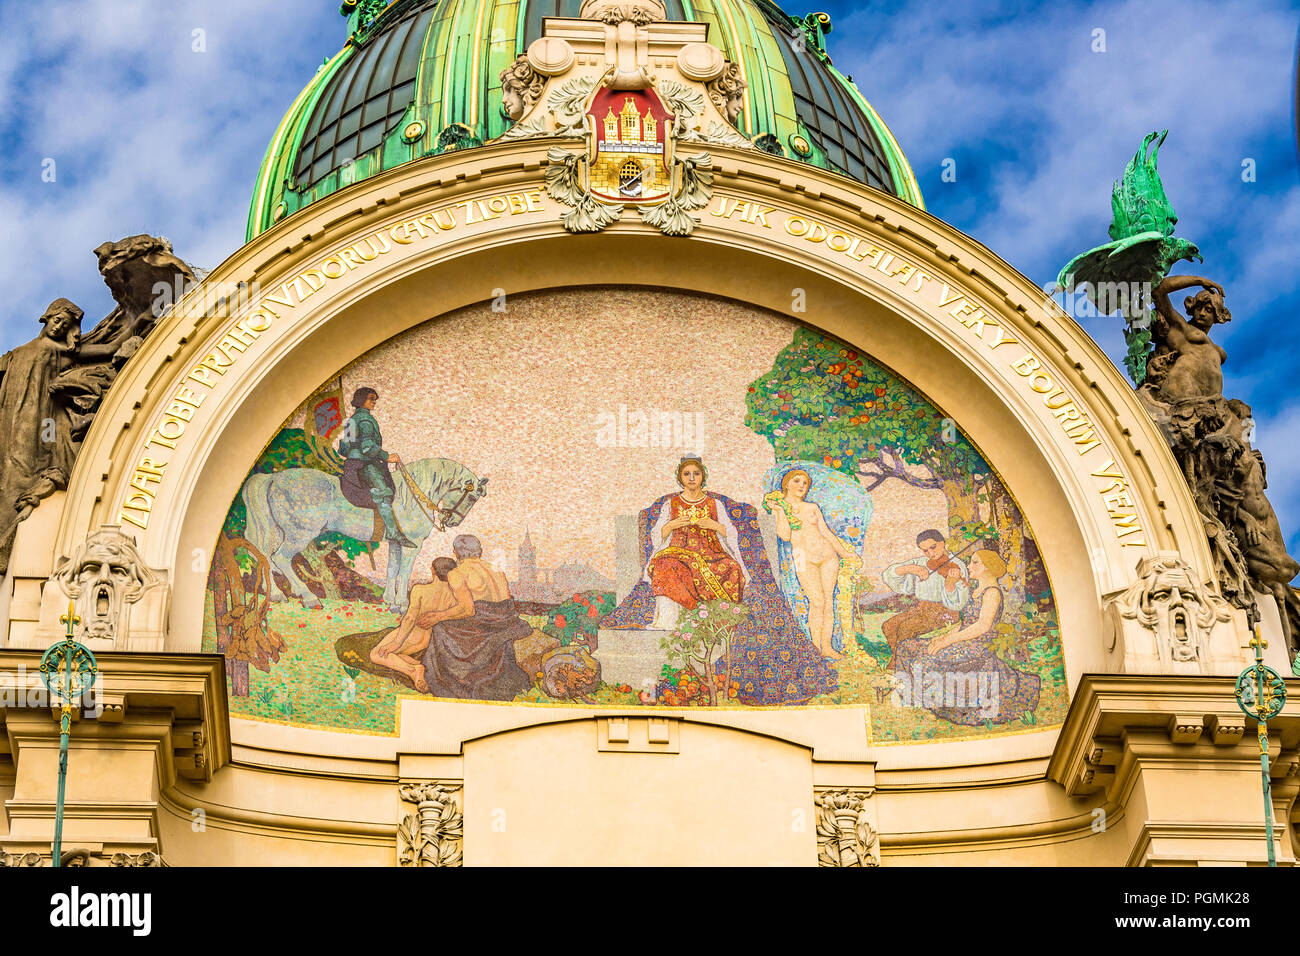 Im Gemeindehaus befindet sich die Smetana-Halle, ein gefeierter Konzertsaal, in Prag. Es befindet sich an der Náměstí Republiky neben dem Pulvertor. Stockfoto